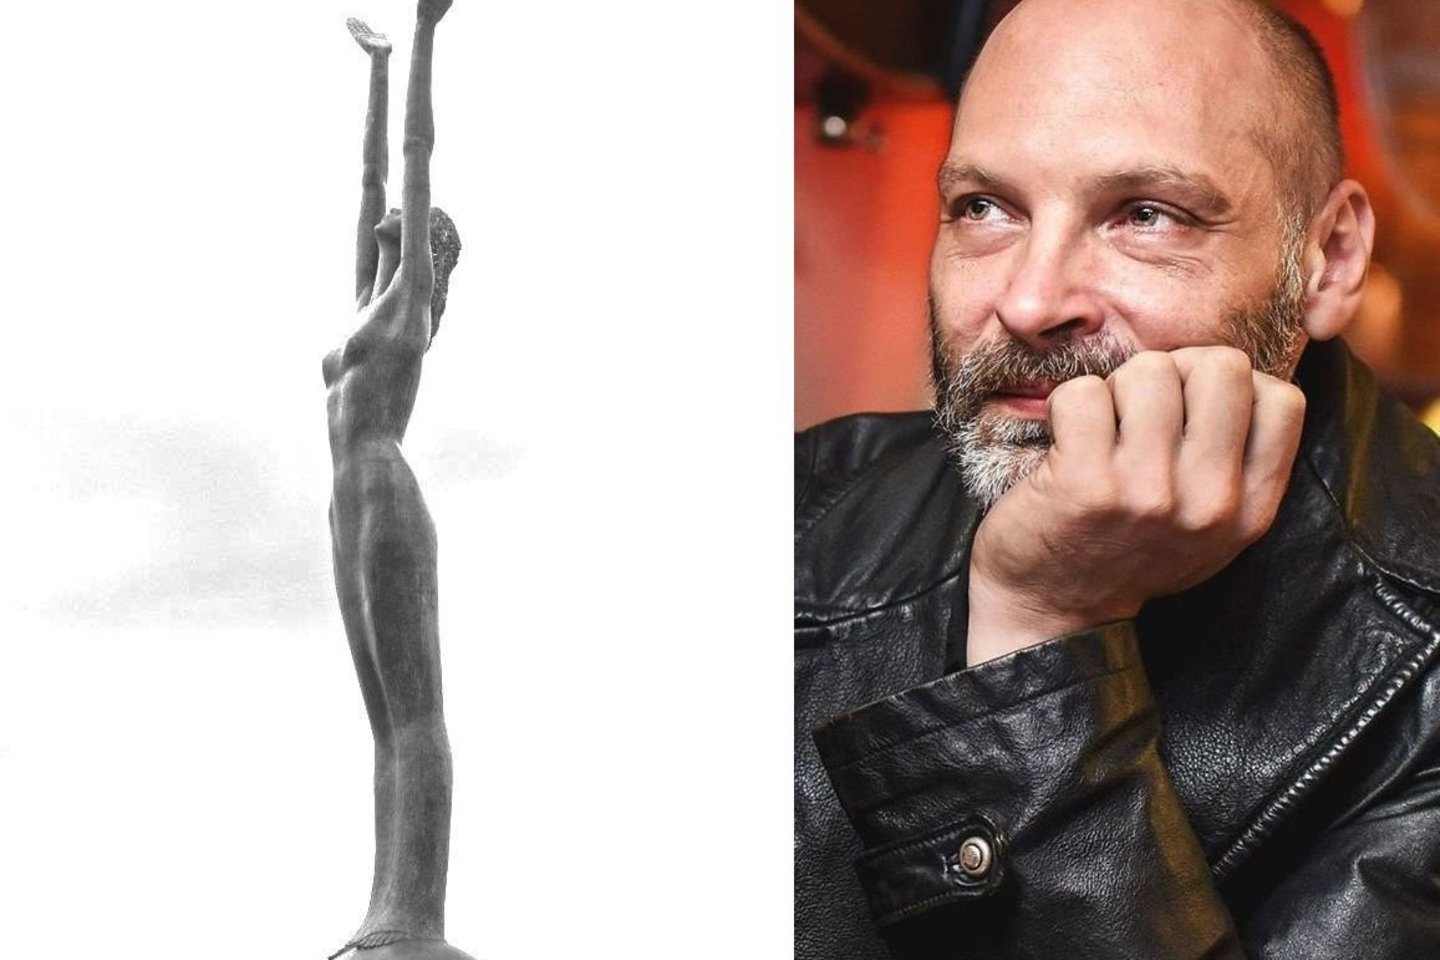 Laimėtojui bus įteikta skulptoriaus D.Bražiūno skulptūrėlė „Laisvė“.<br> Nuotr. iš Vilniaus mažojo teatro archyvo